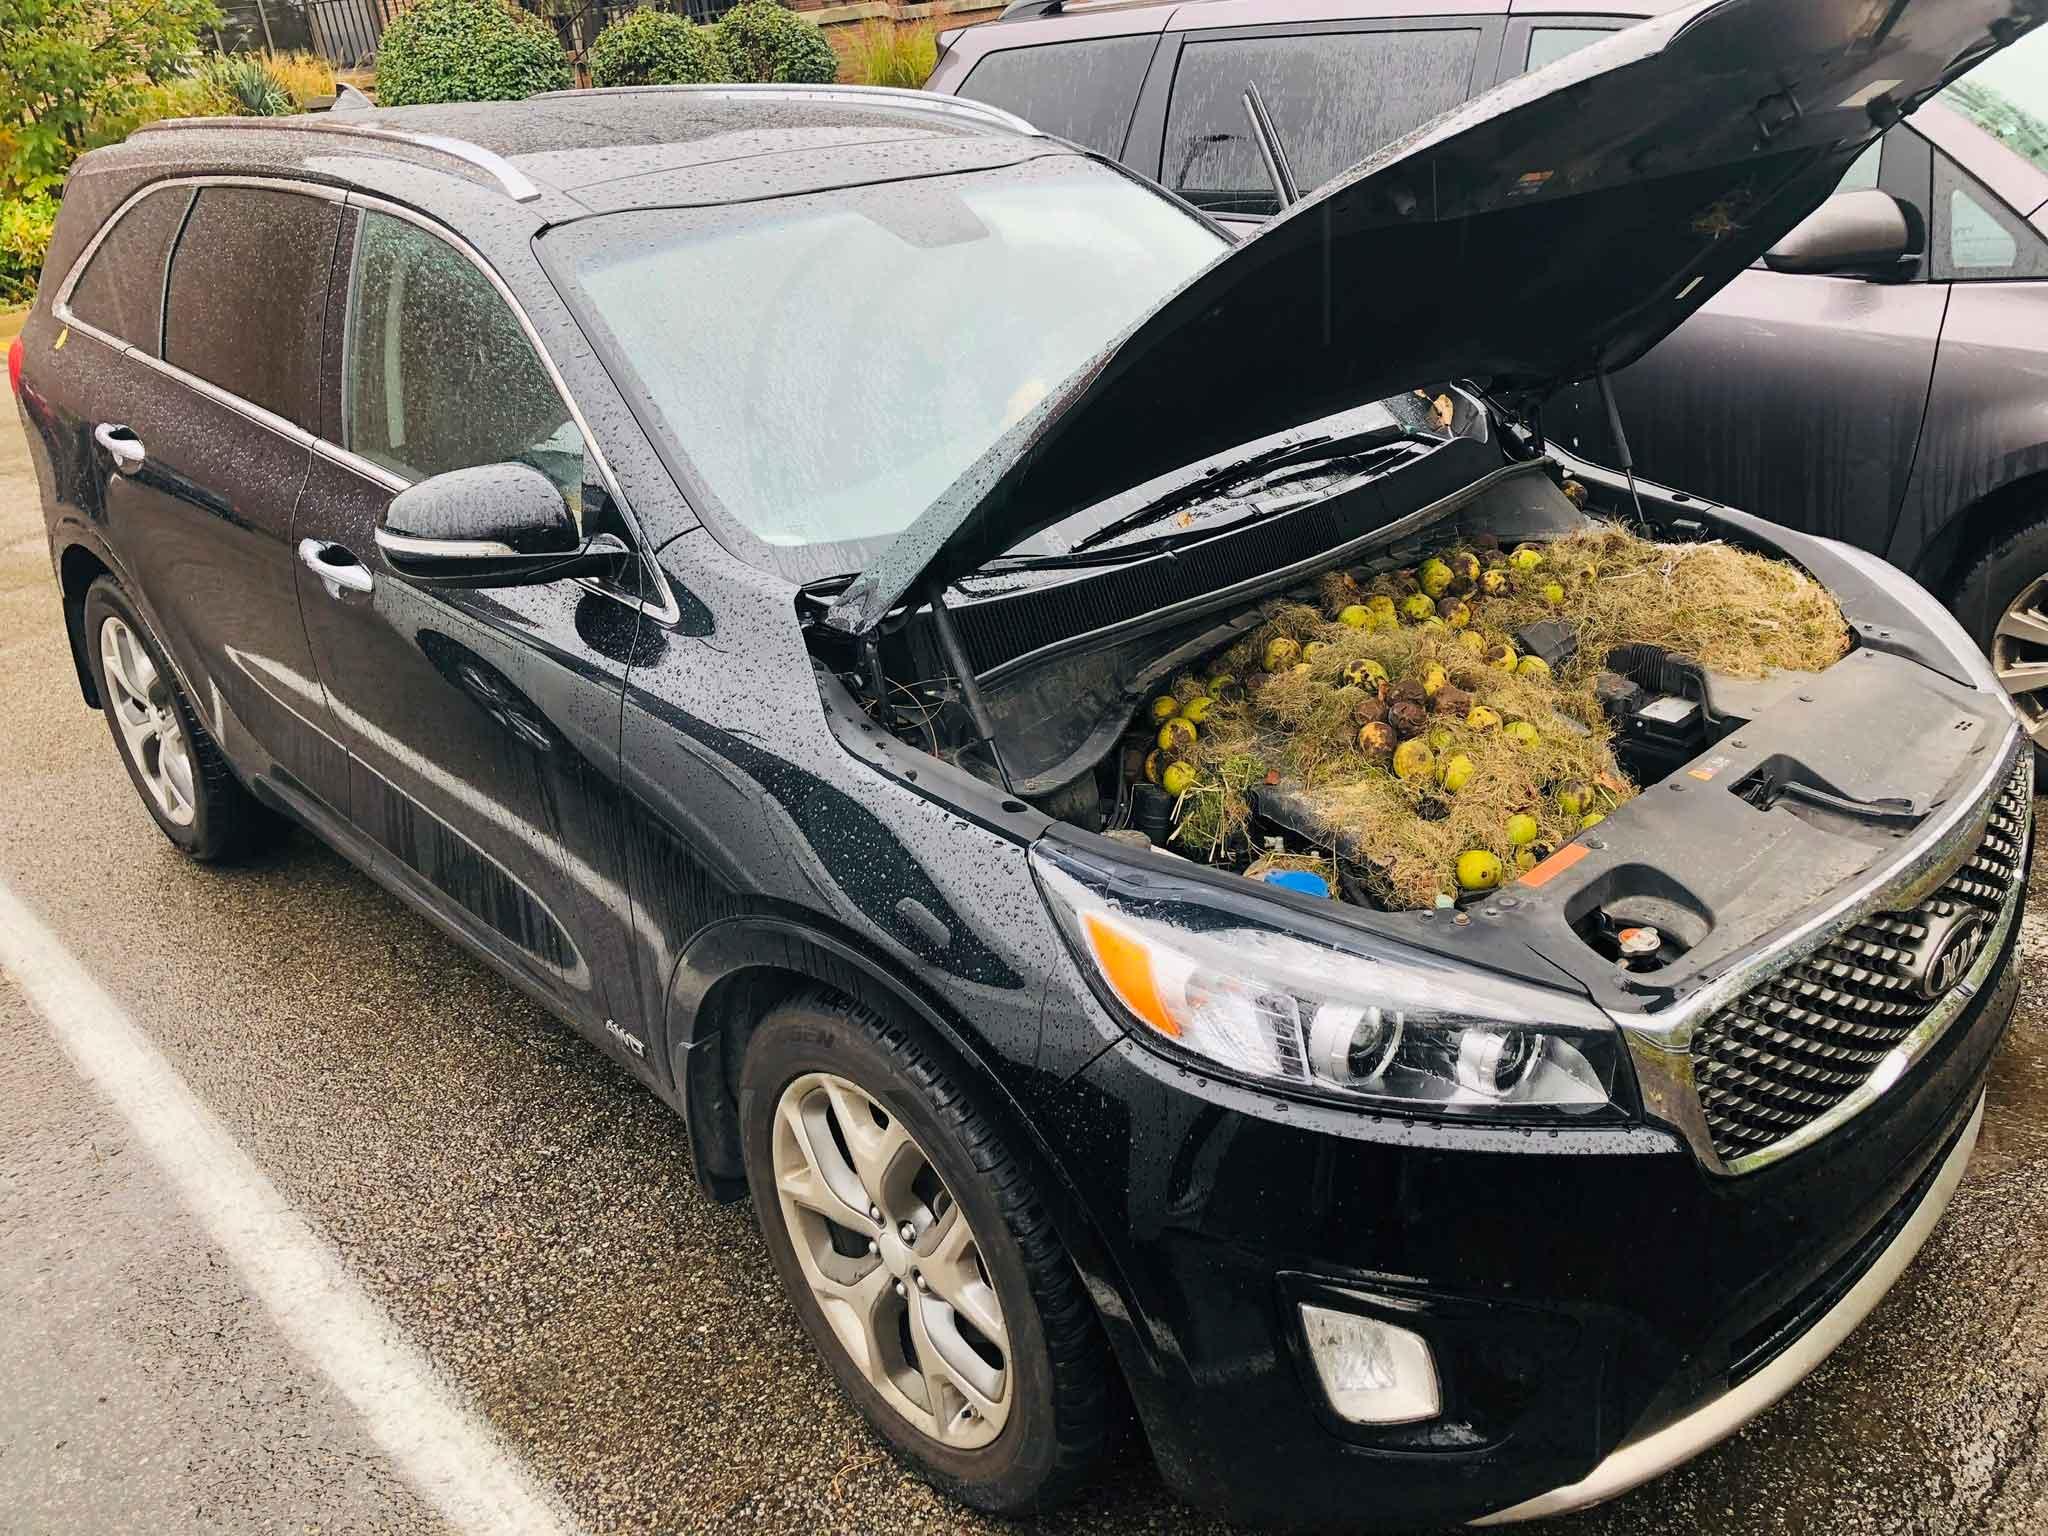 Walnuts found underneath car hood